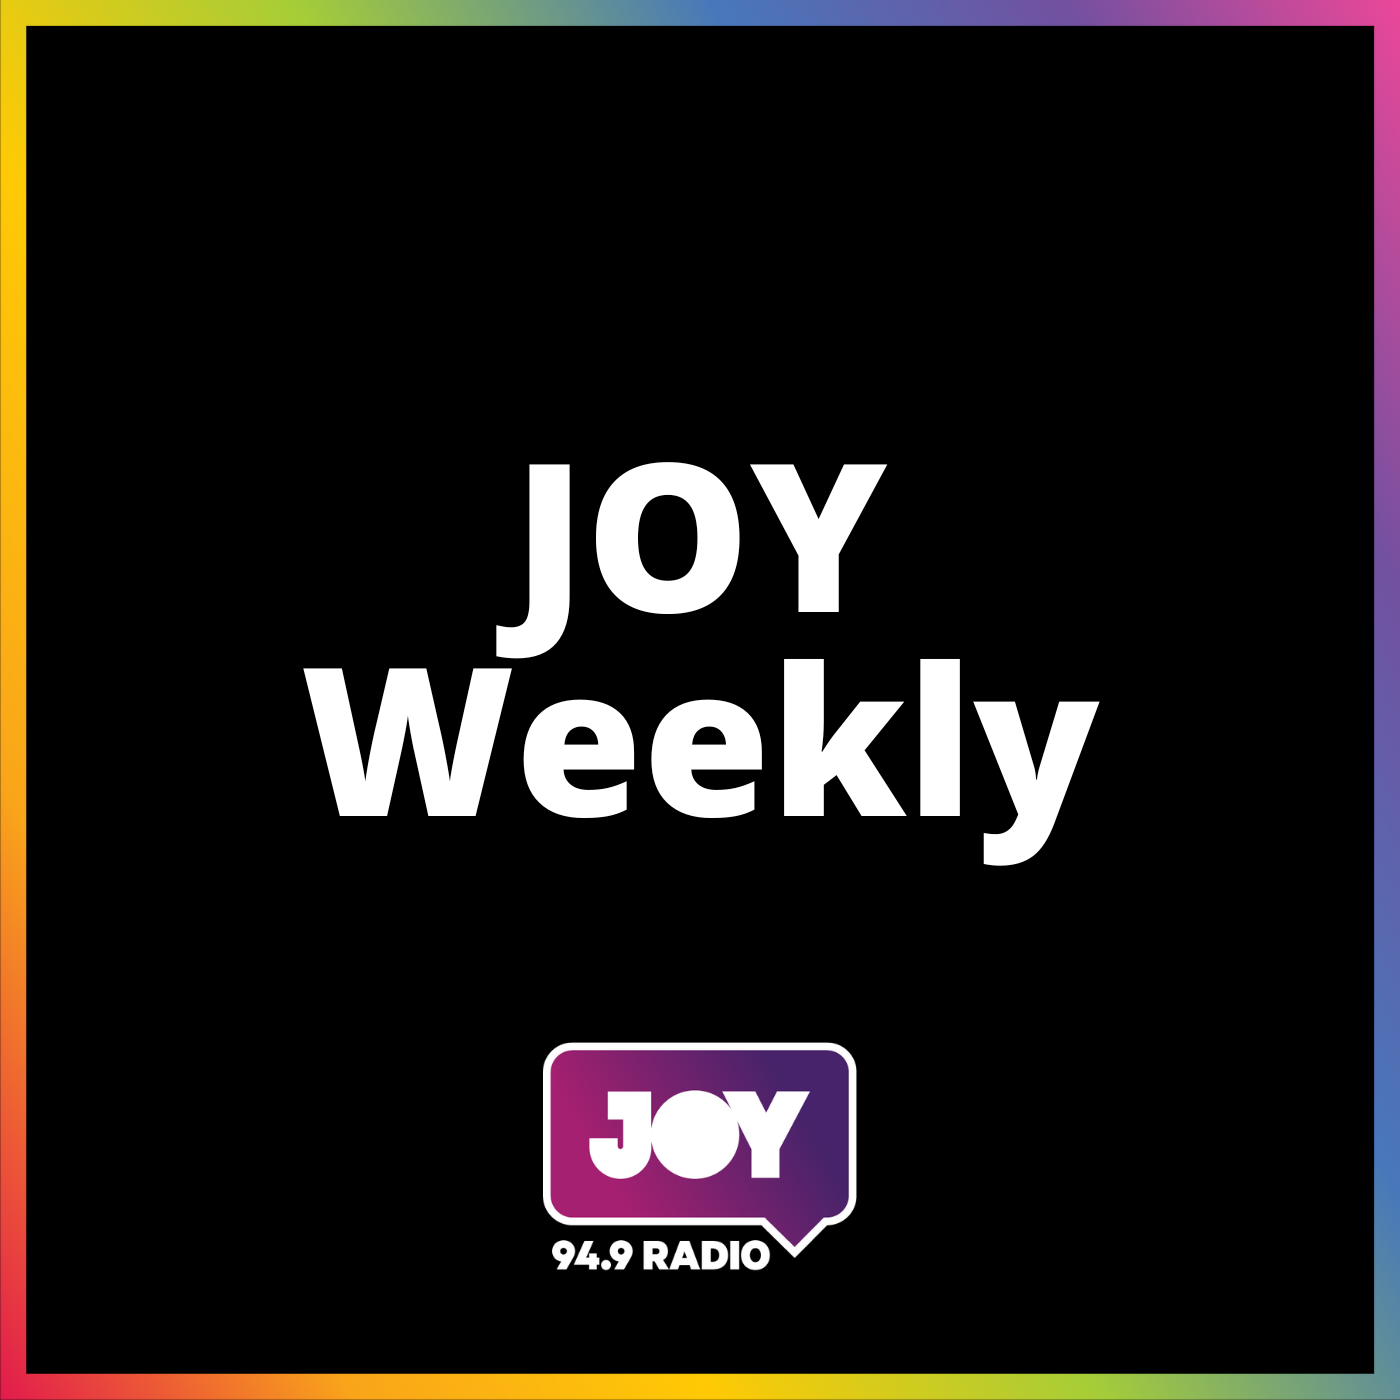 JOY Weekly